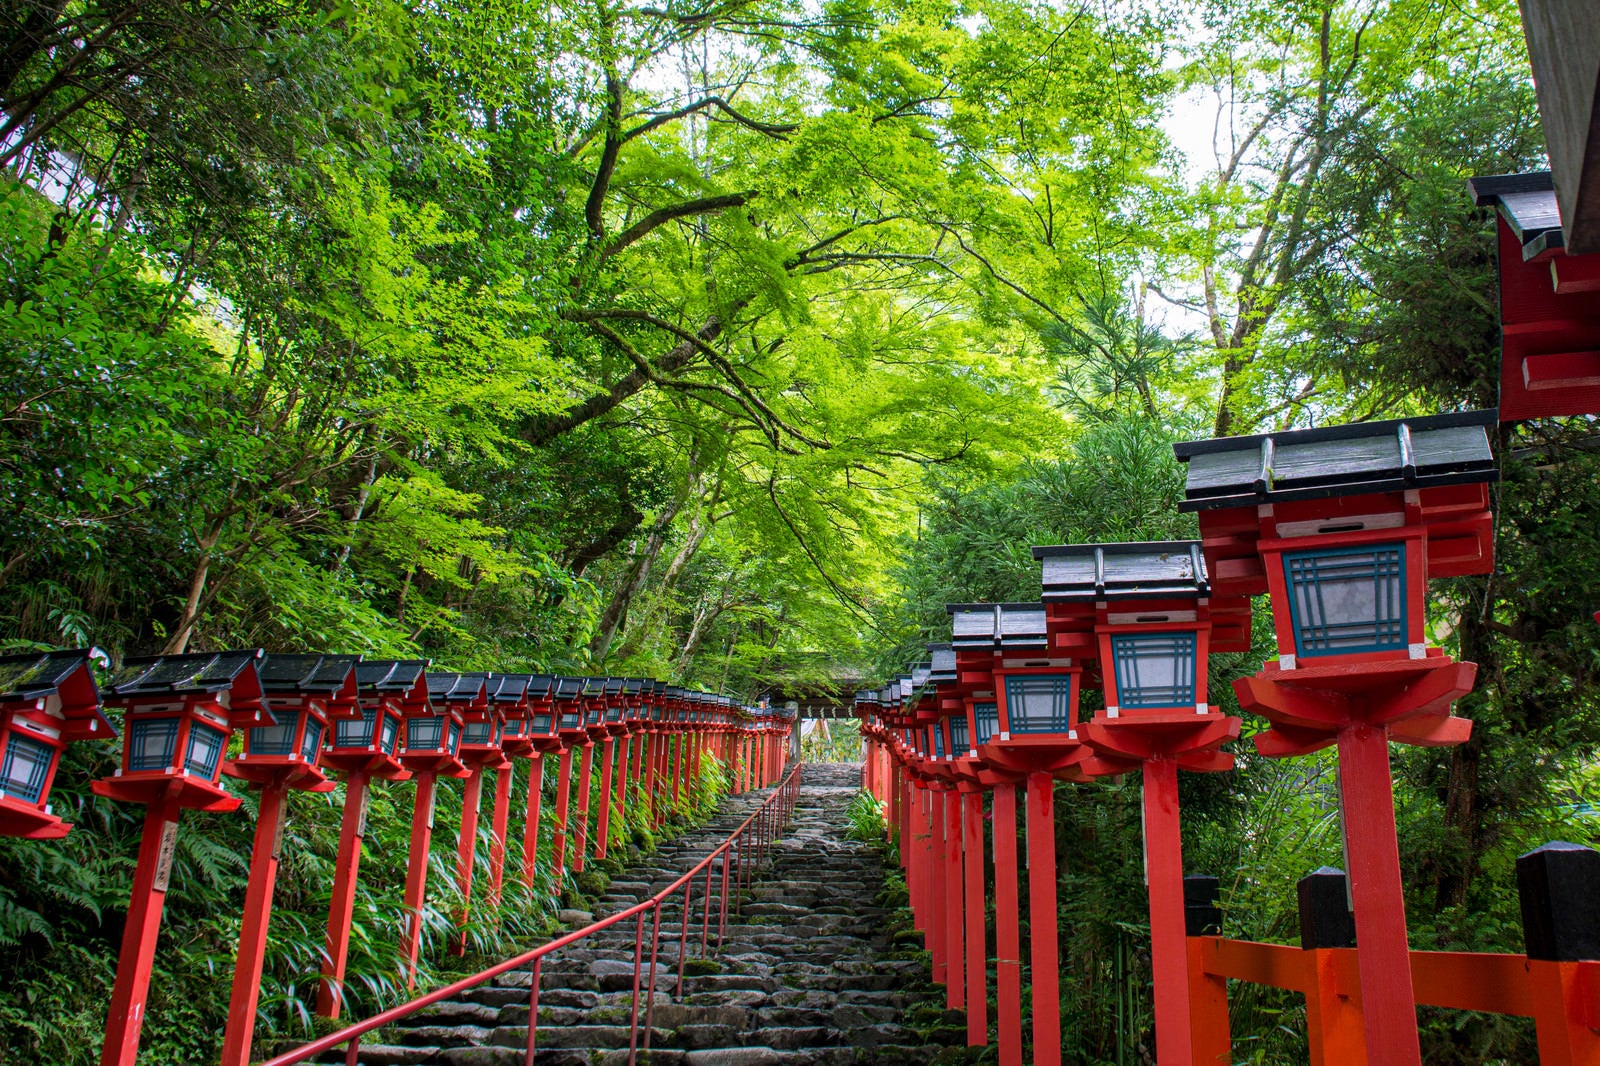 「青紅葉に赤い灯篭が映える京都貴船神社入り口の石段」の写真